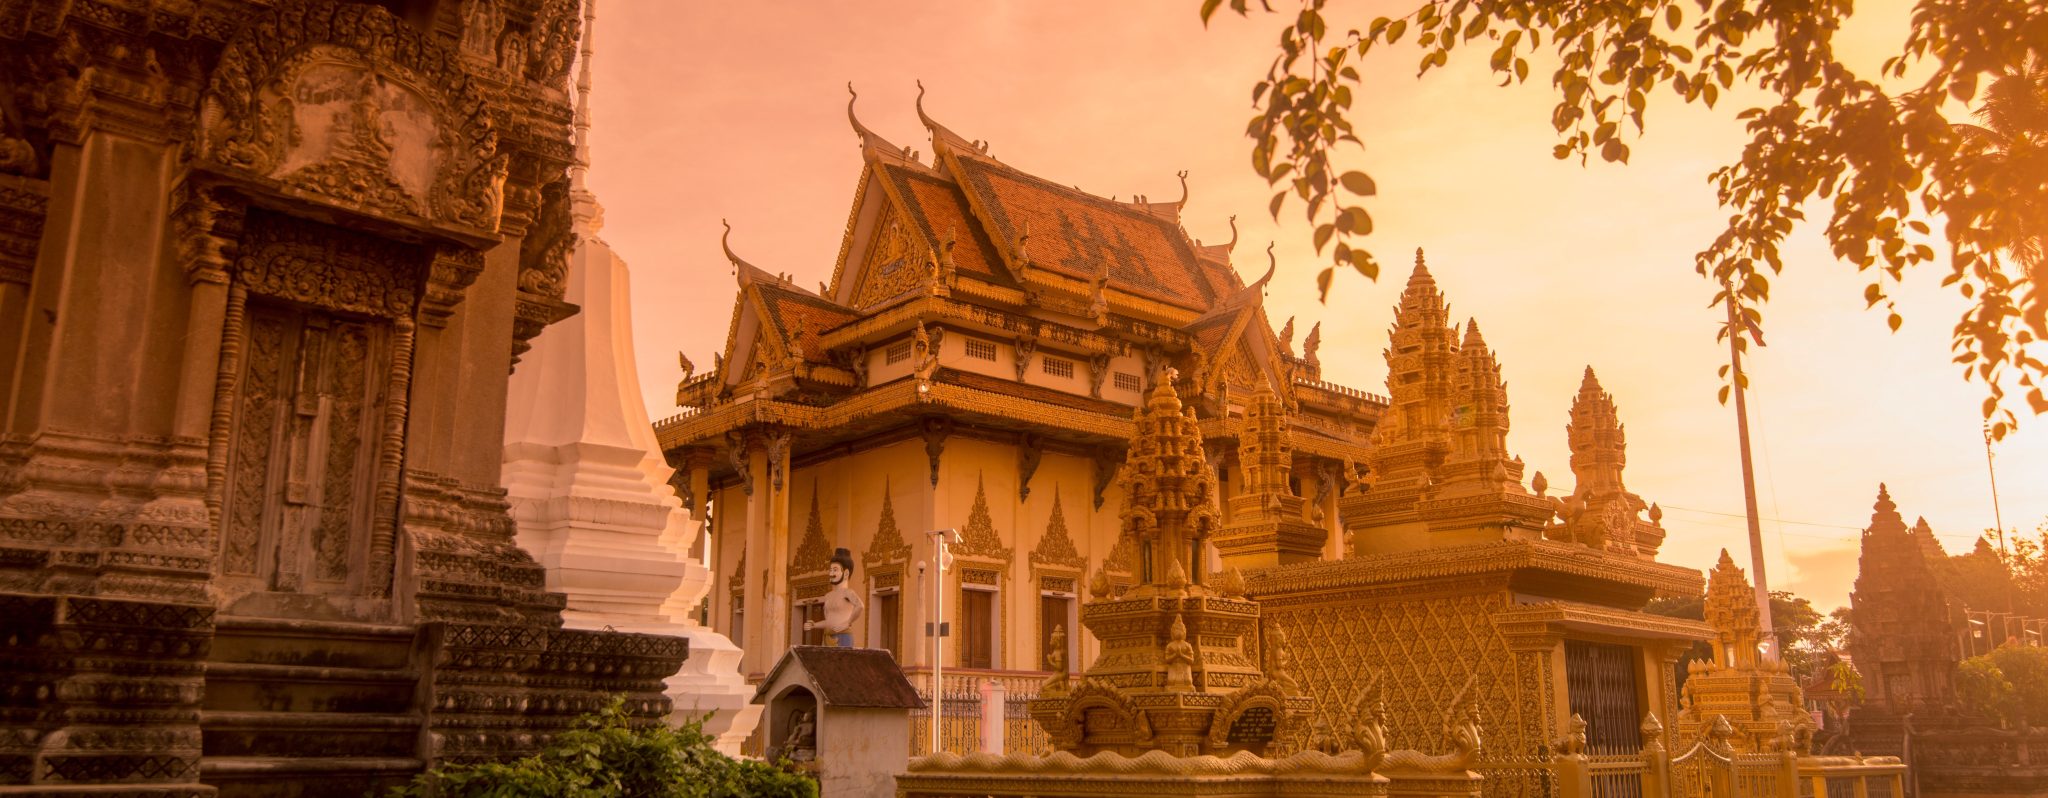 5 Reasons Why Battambang is Worth Visiting